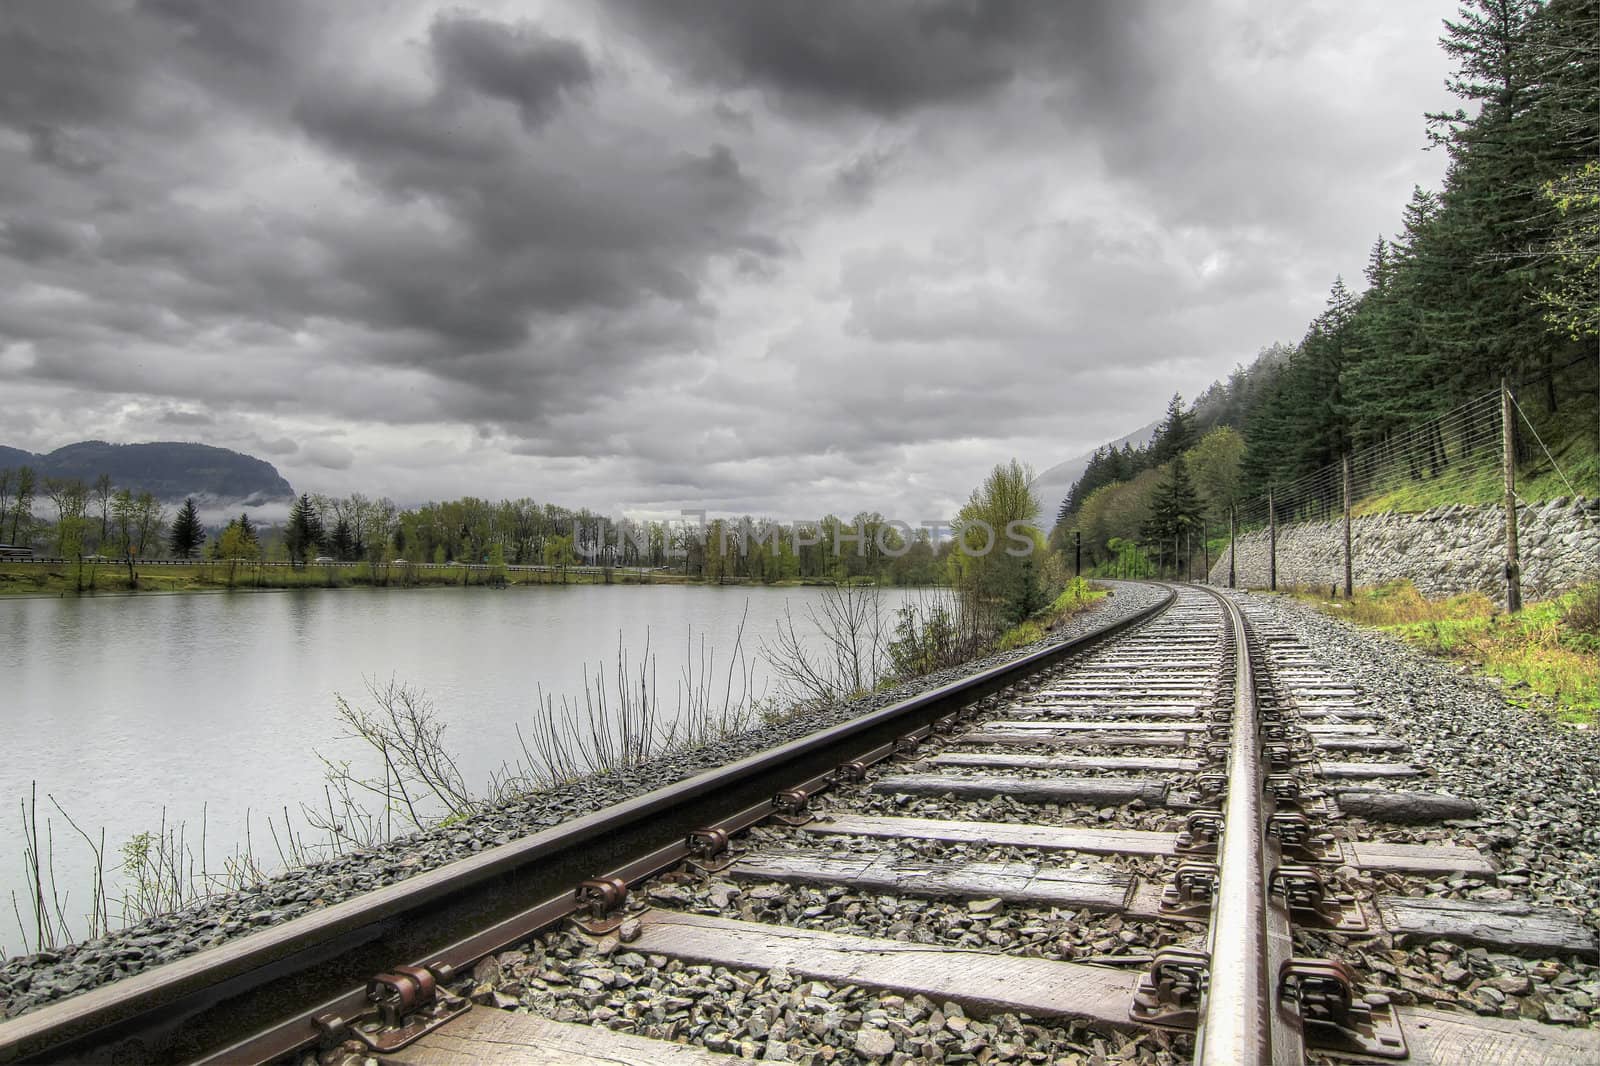 Railroad Train Track in Columbia River Gorge